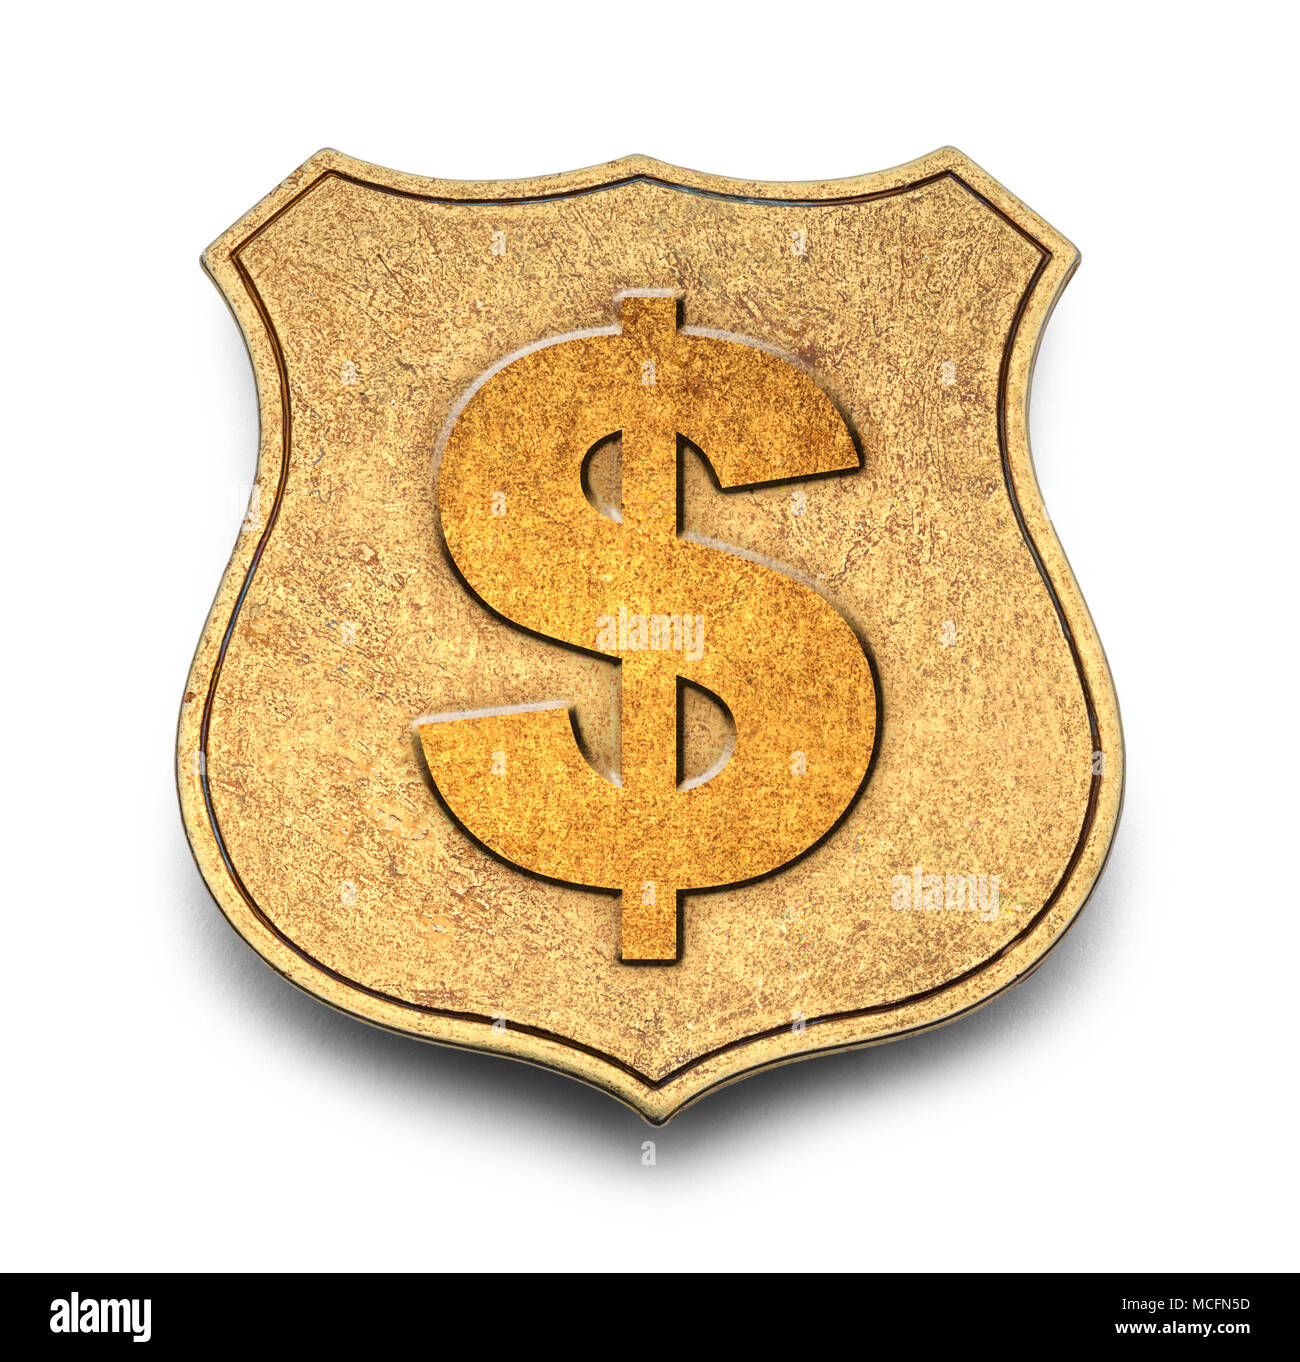 Gold Money Badge Isolated on White Background. Stock Photo